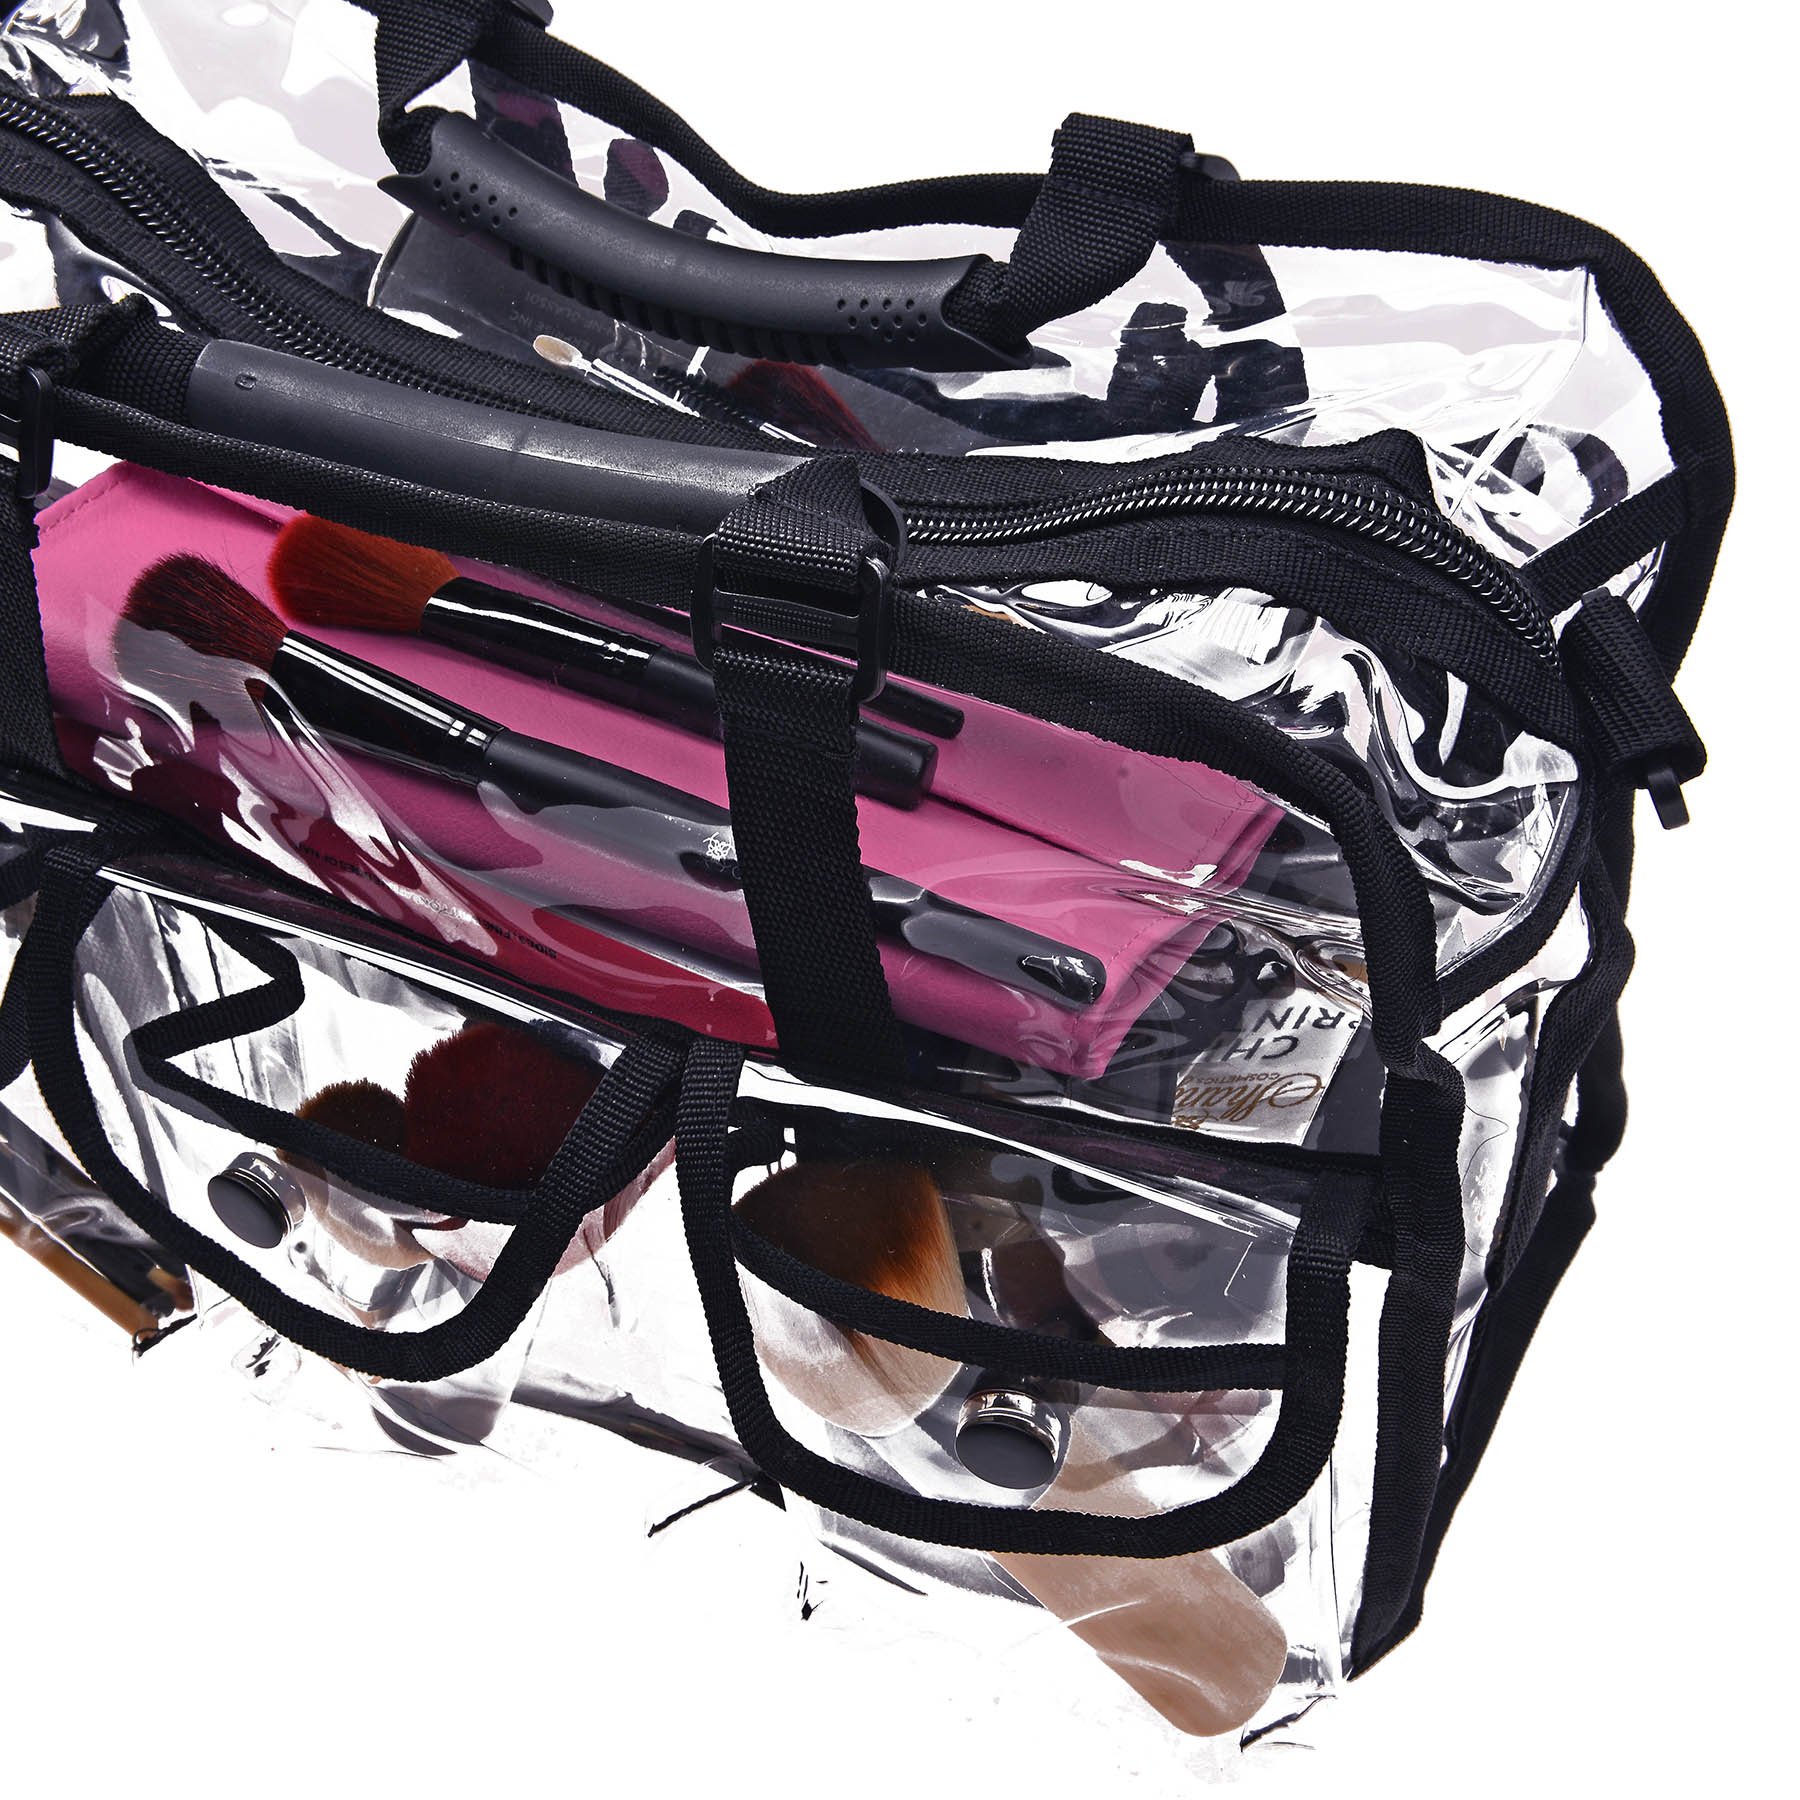 SHANY Clear Makeup Bag, Pro Mua rectangular Bag with Shoulder Strap, Large